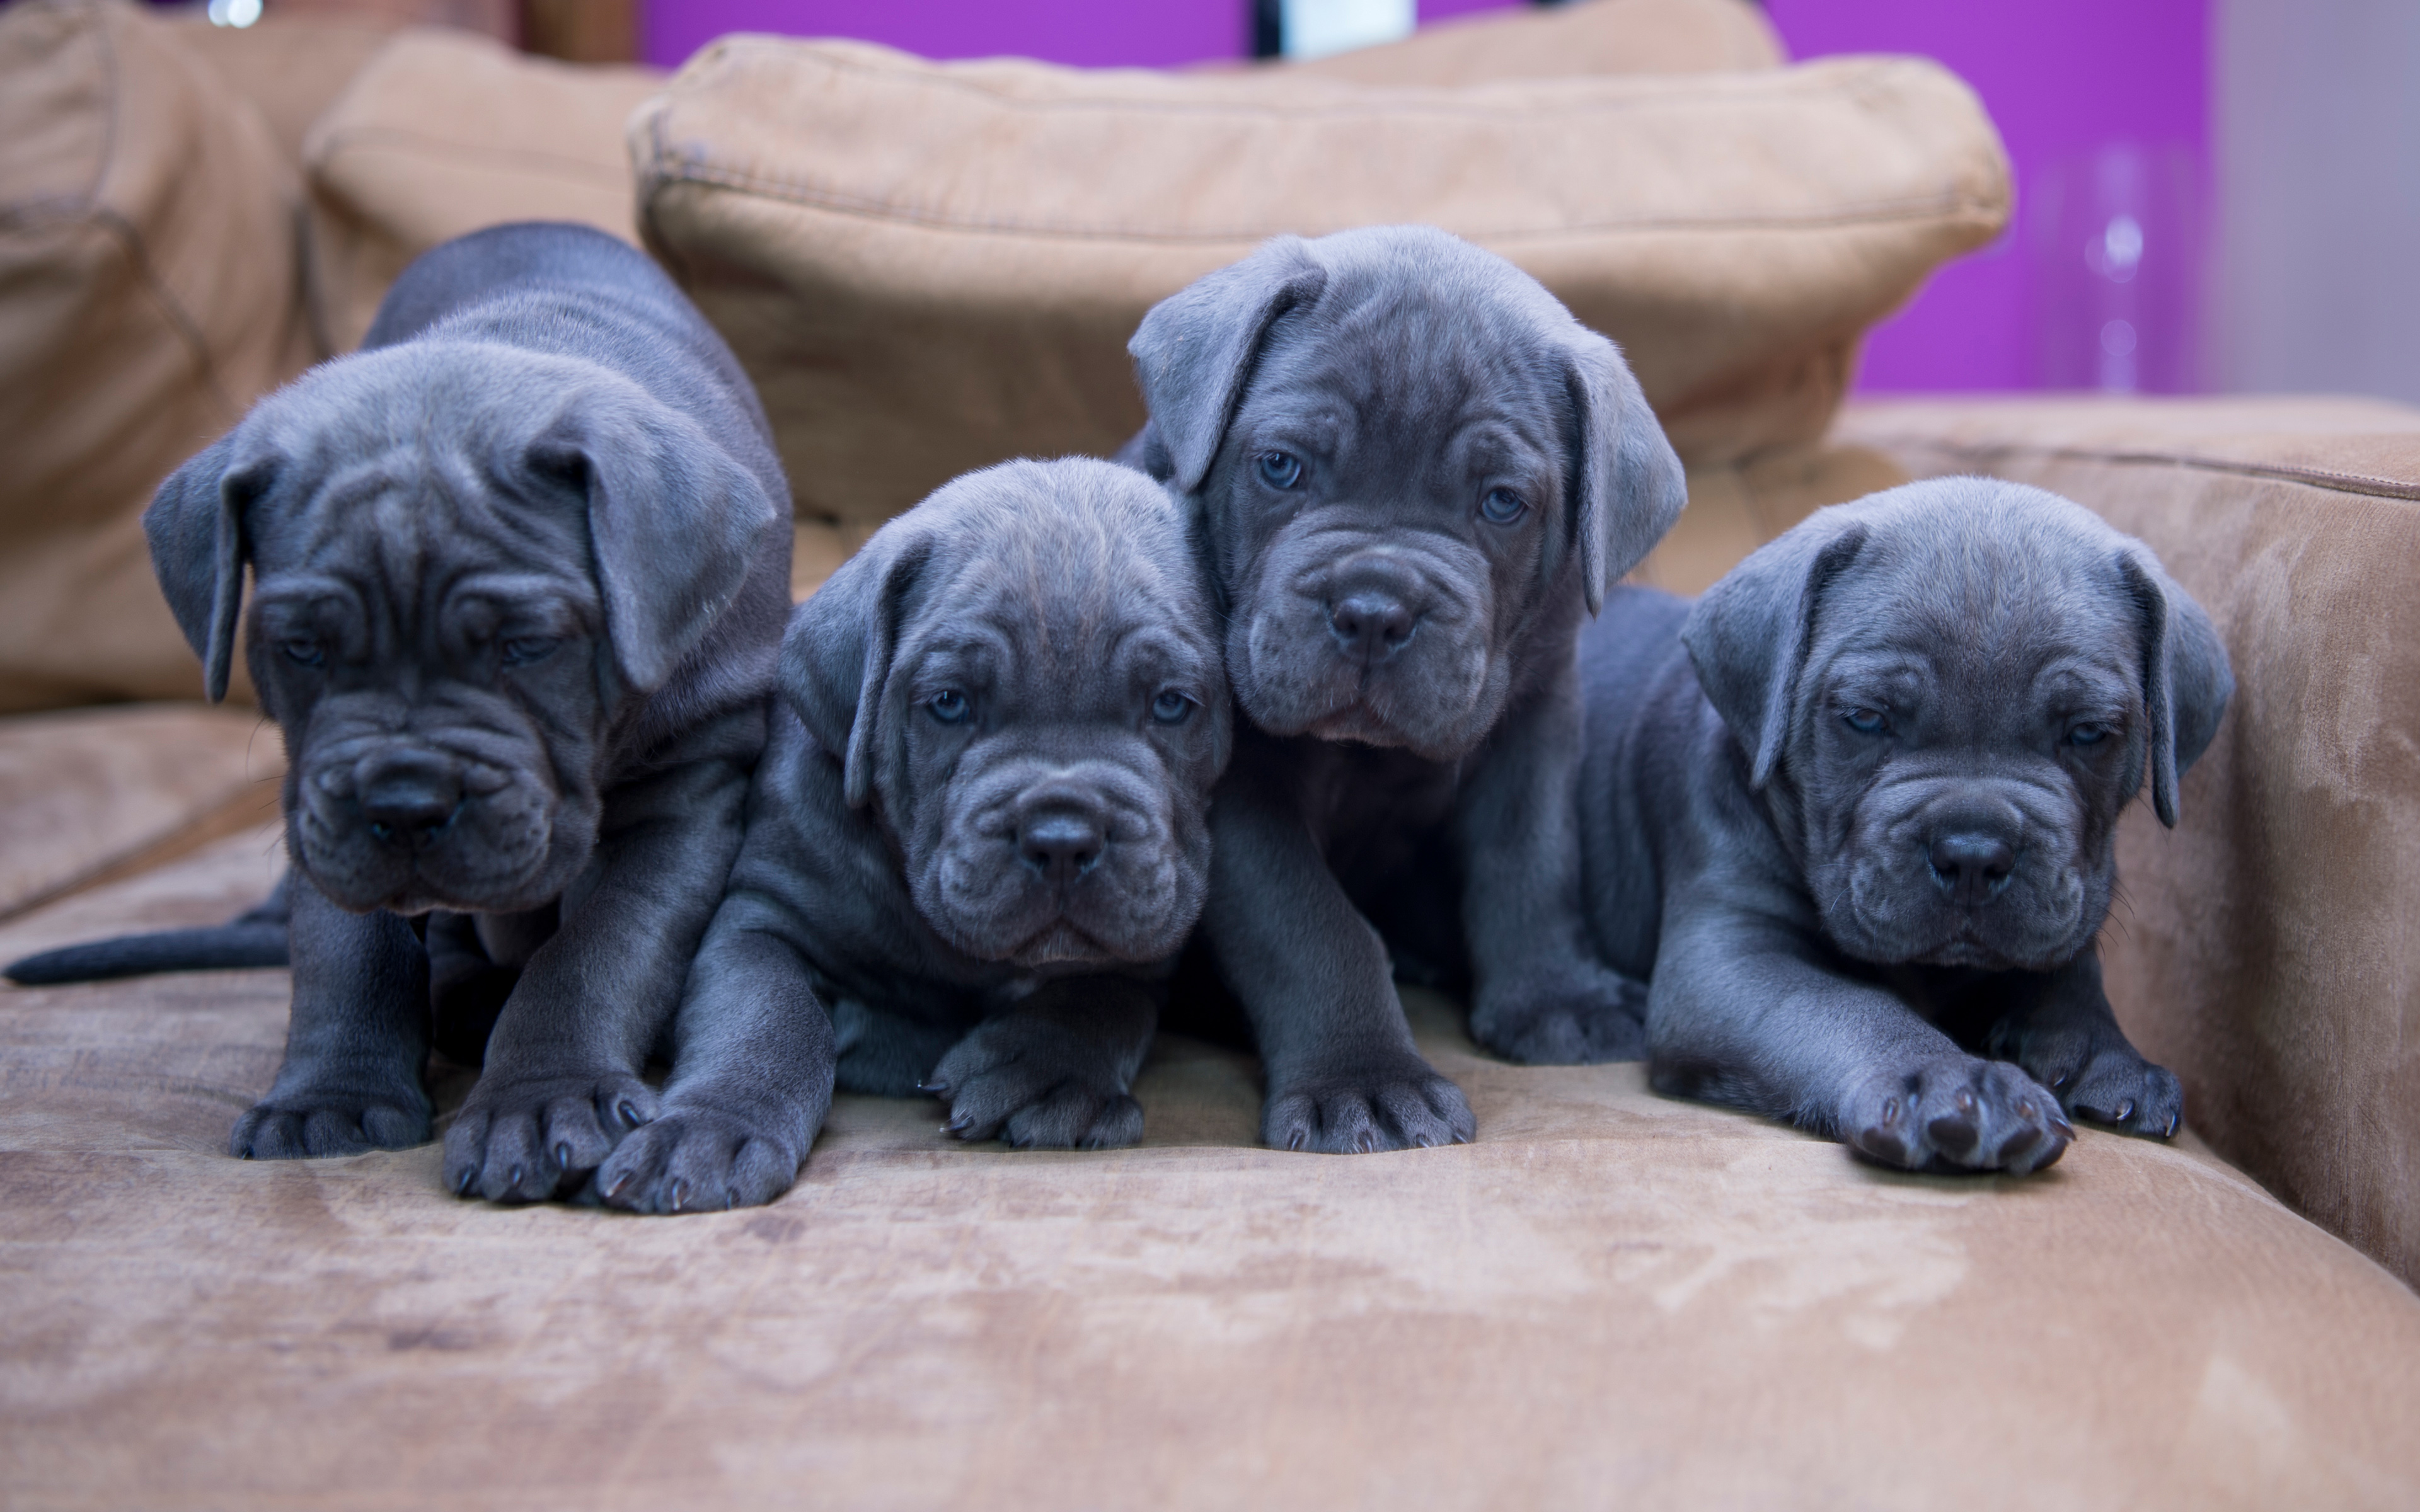 Cane Corso, Gray Small Puppies, Small Dogs, Quartet, - Cane Corso Small Dog - HD Wallpaper 